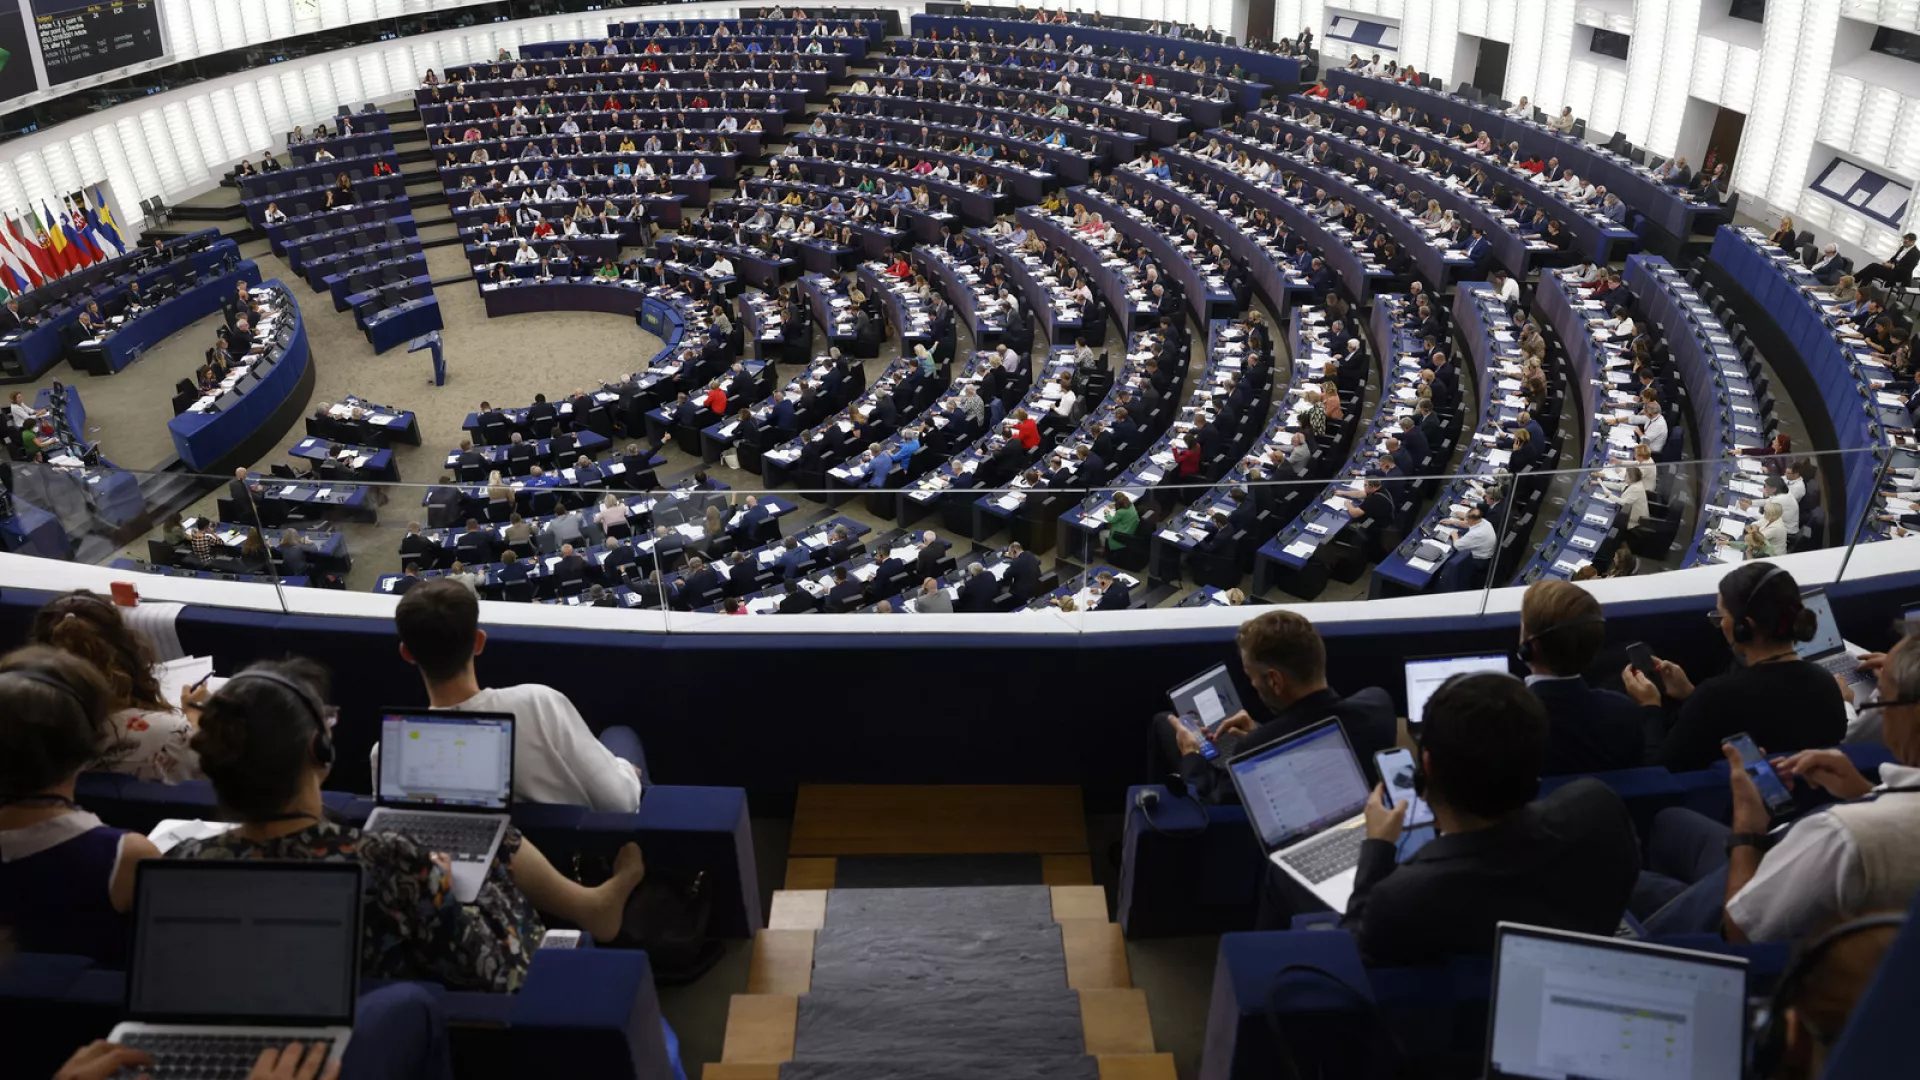 Parlamenti Evropian 'po i shqyrton' pretendimet se ka eurodeputetë të paguar për të përhapur propagandë ruse